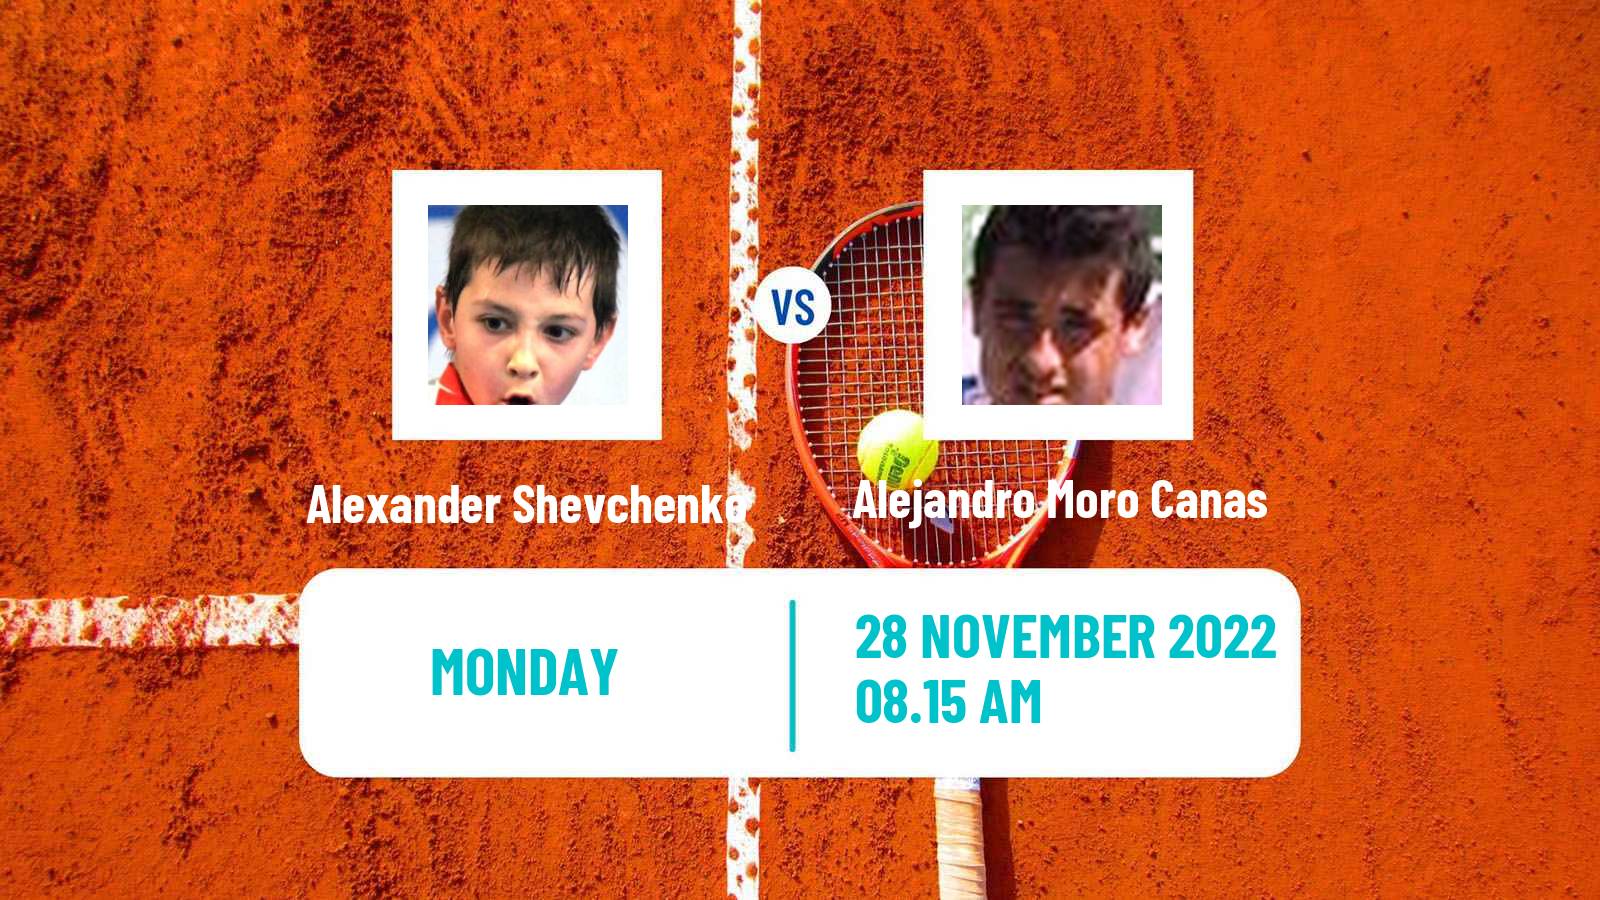 Tennis ATP Challenger Alexander Shevchenko - Alejandro Moro Canas